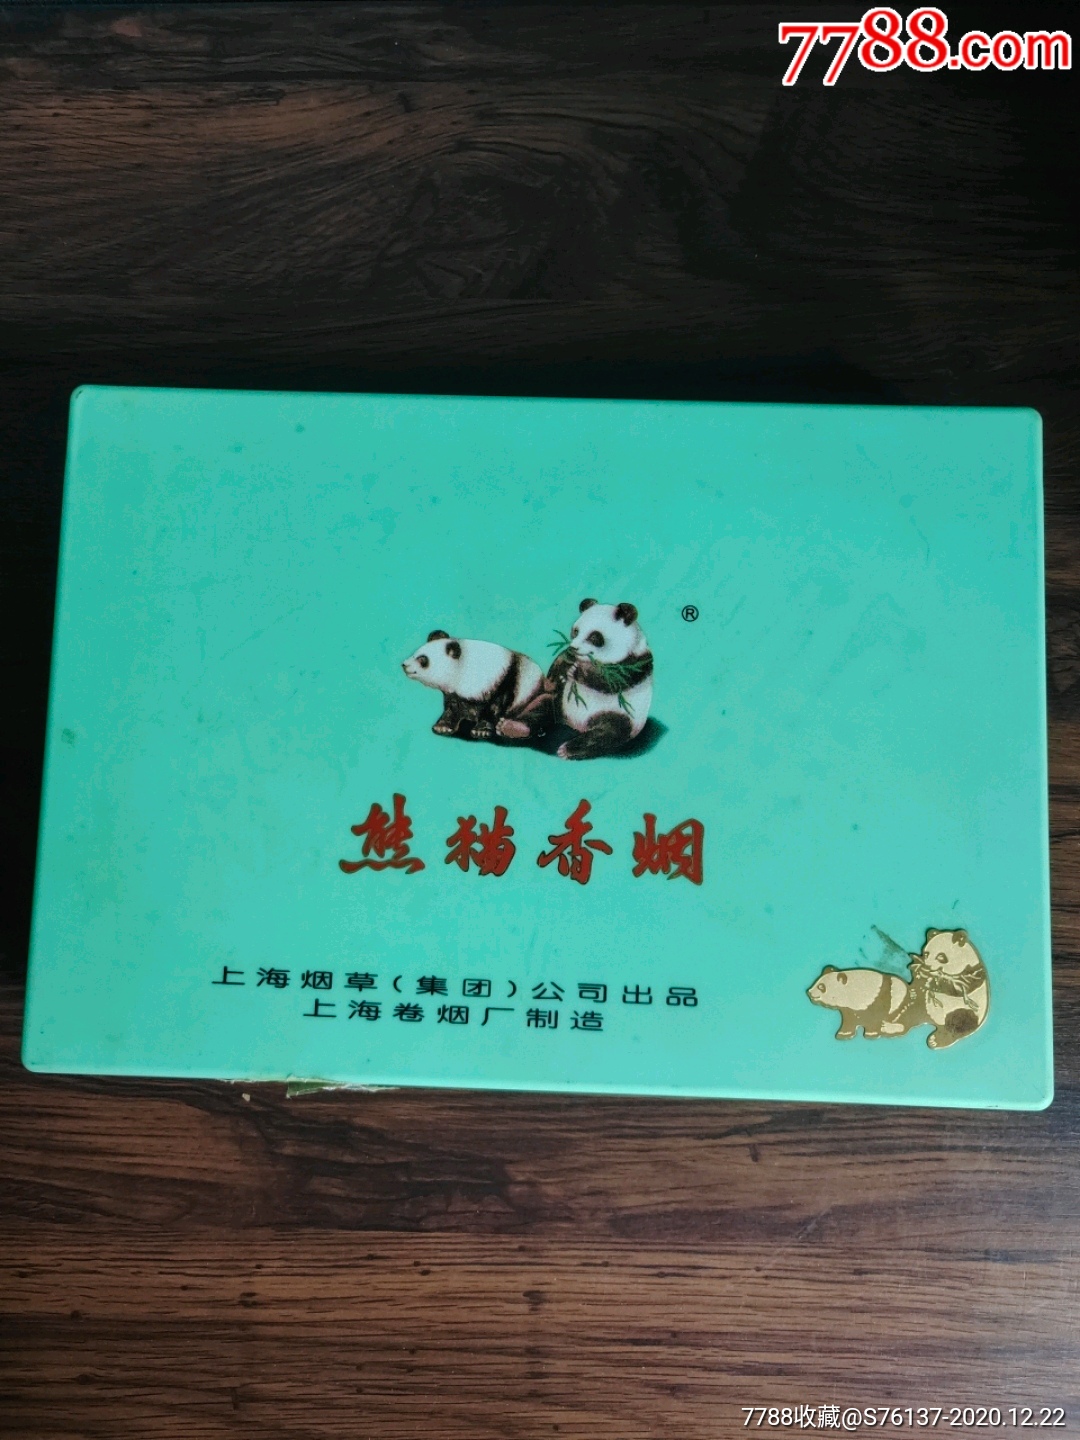 熊猫香烟礼盒装8包图片